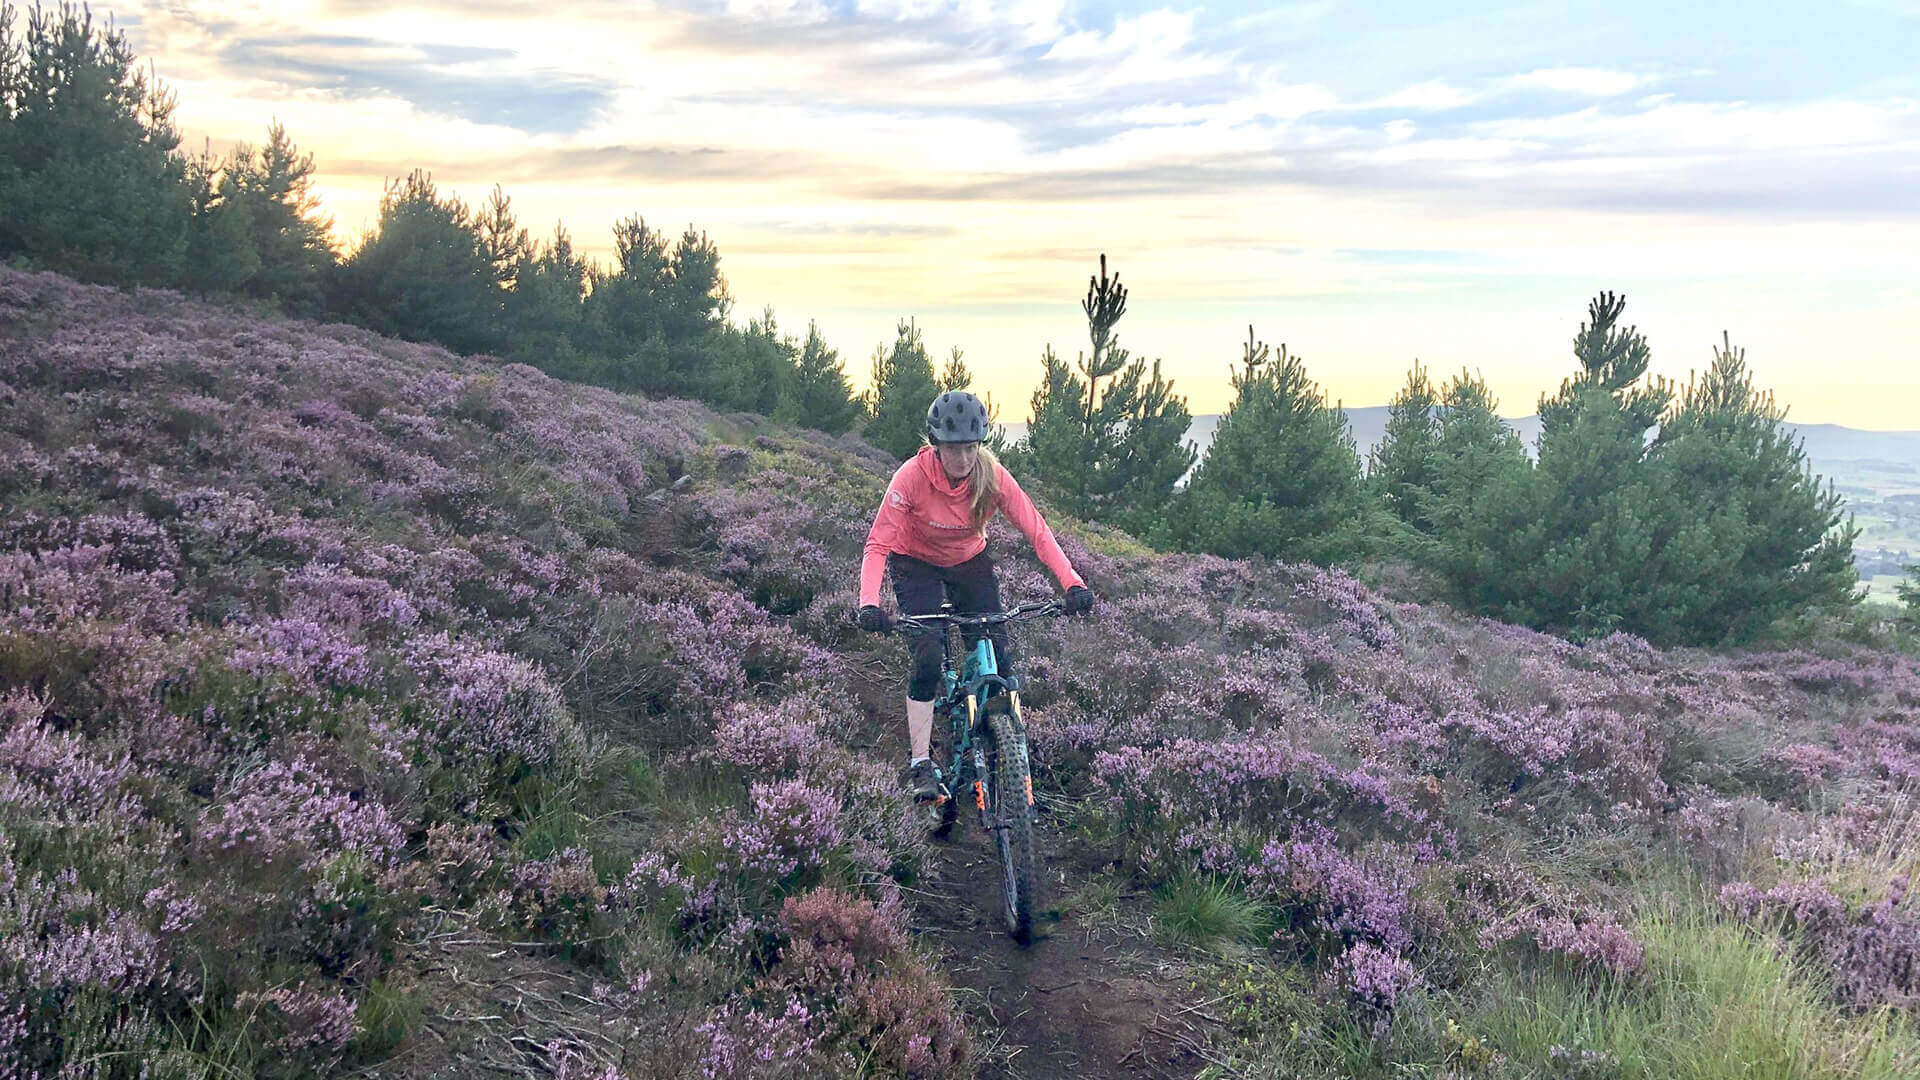 Mountain biking in purple heather